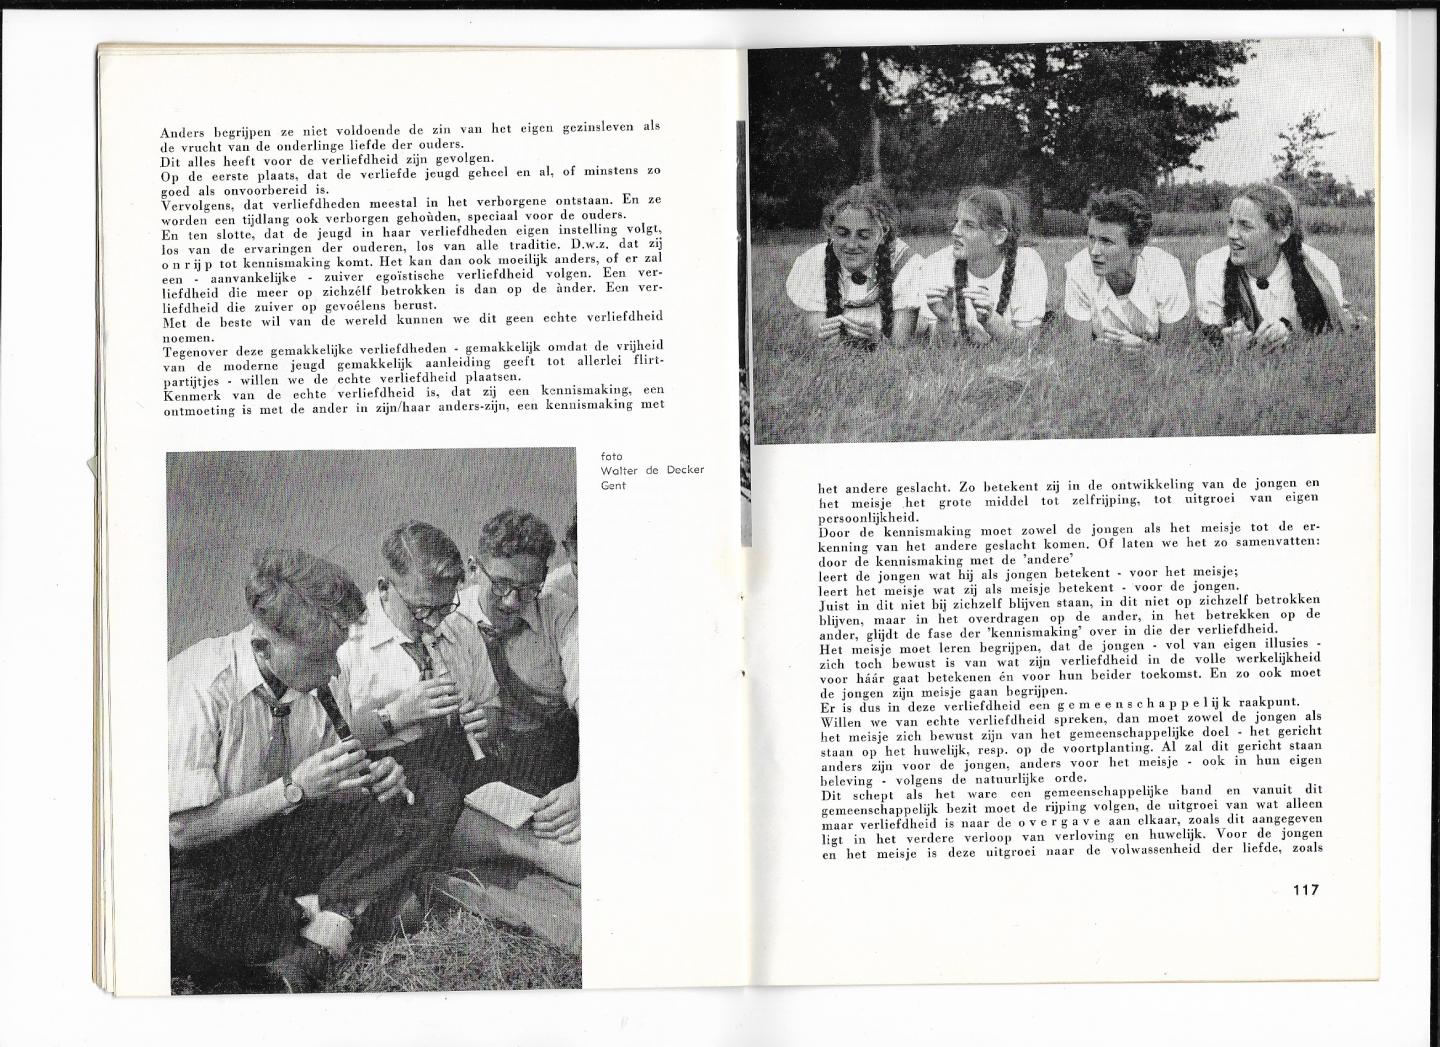 red. P.Th.De Weijer - Voor Heilige Poorten, tijdschrift voor verloofden, uitgave juli/augustus 1957